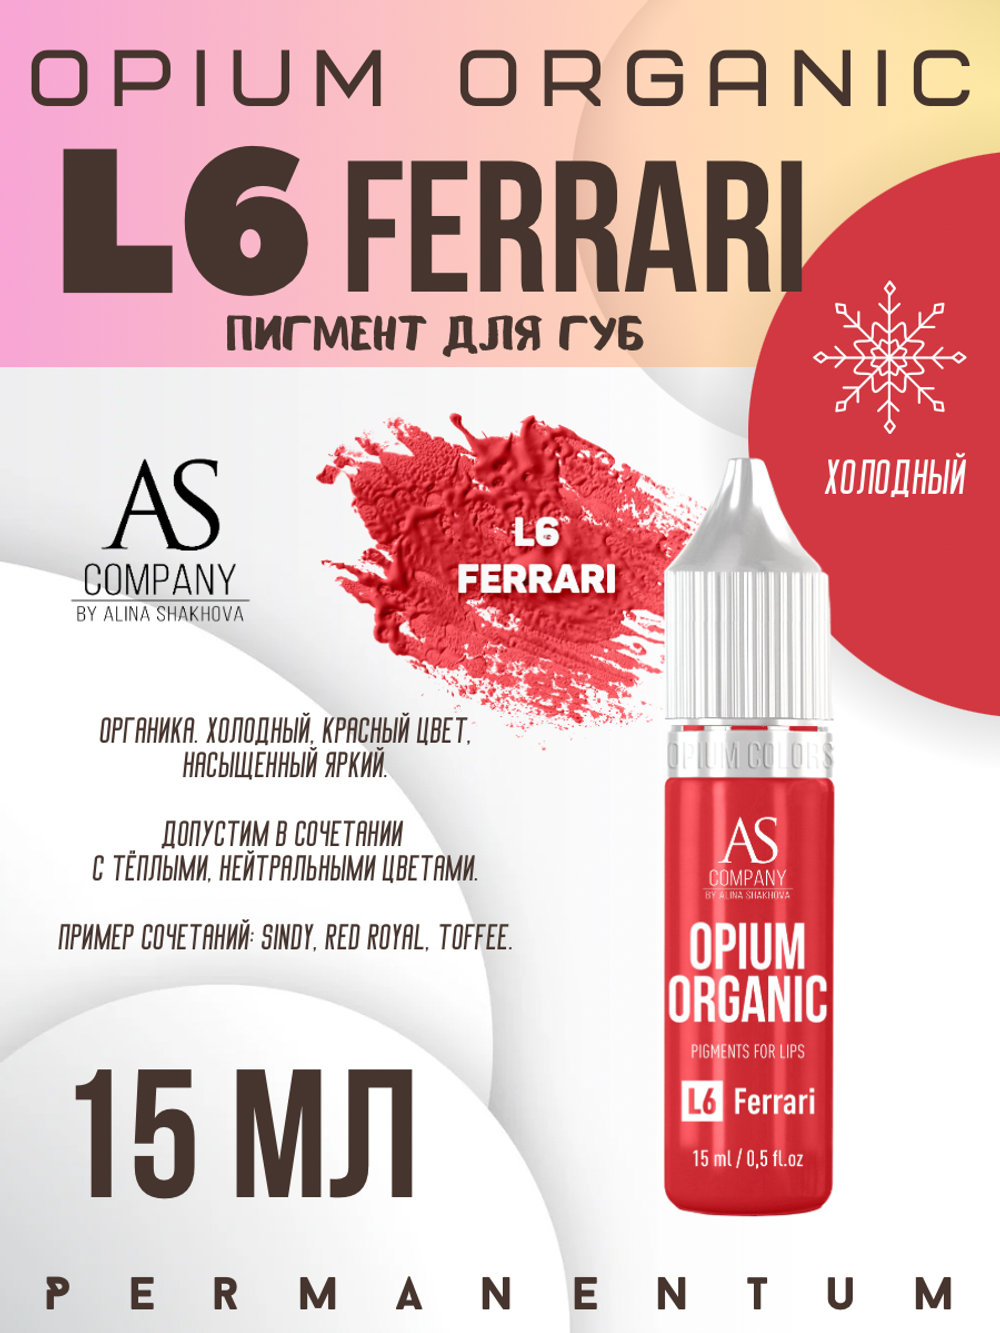 L6 FERRARI ORGANIC пигмент для губ TM AS-Company OPIUM COLORS